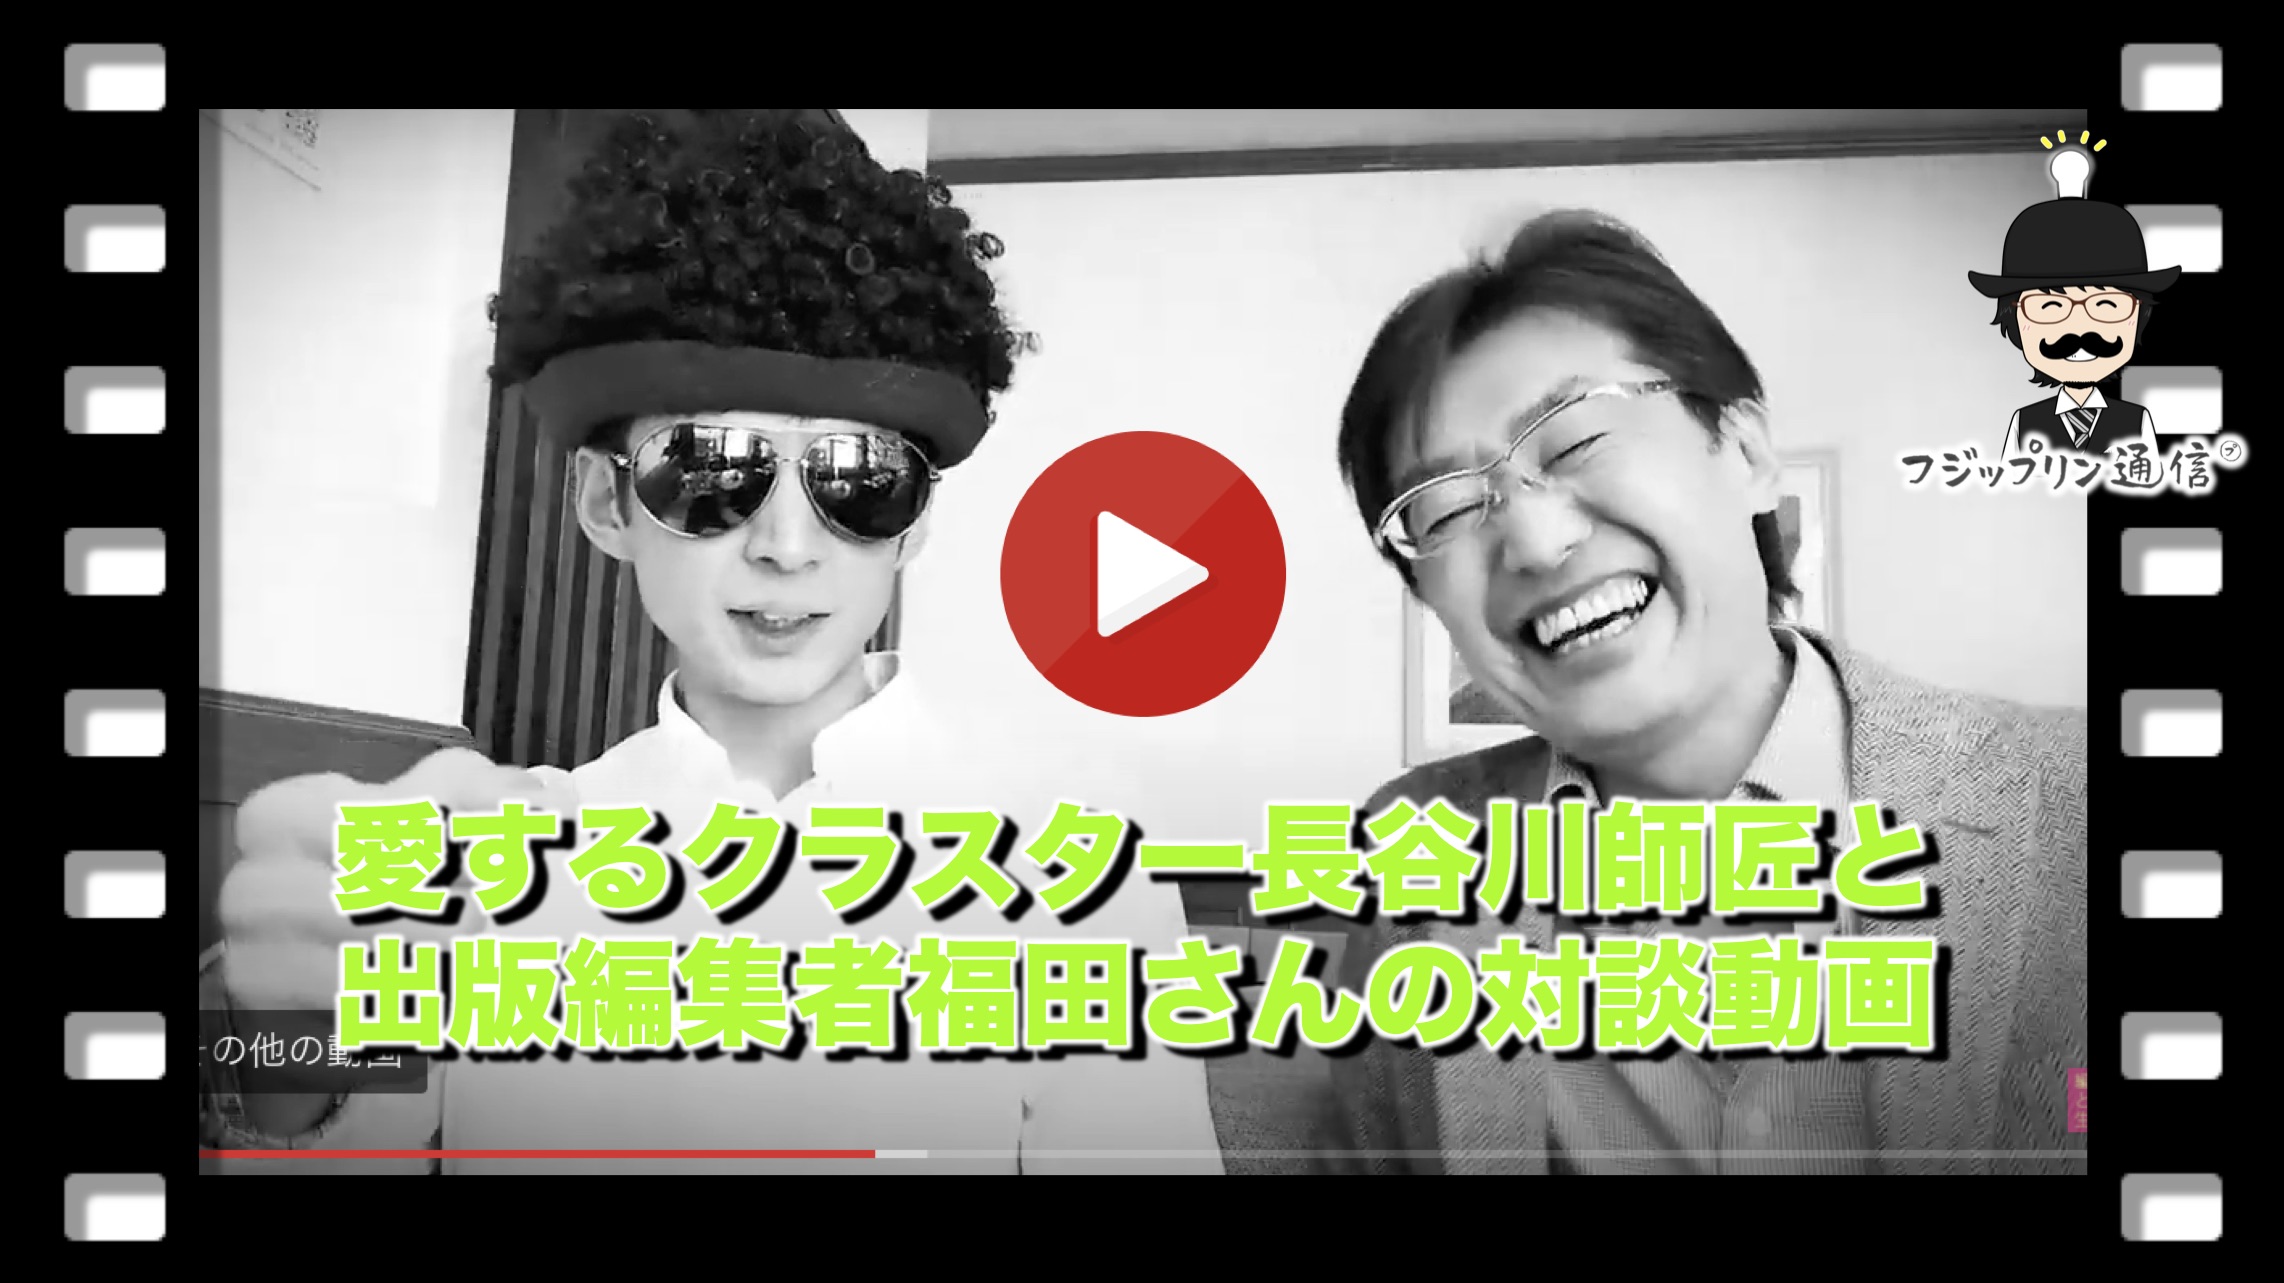 愛するクラスター長谷川師匠と出版編集者福田さんの対談動画を紹介。